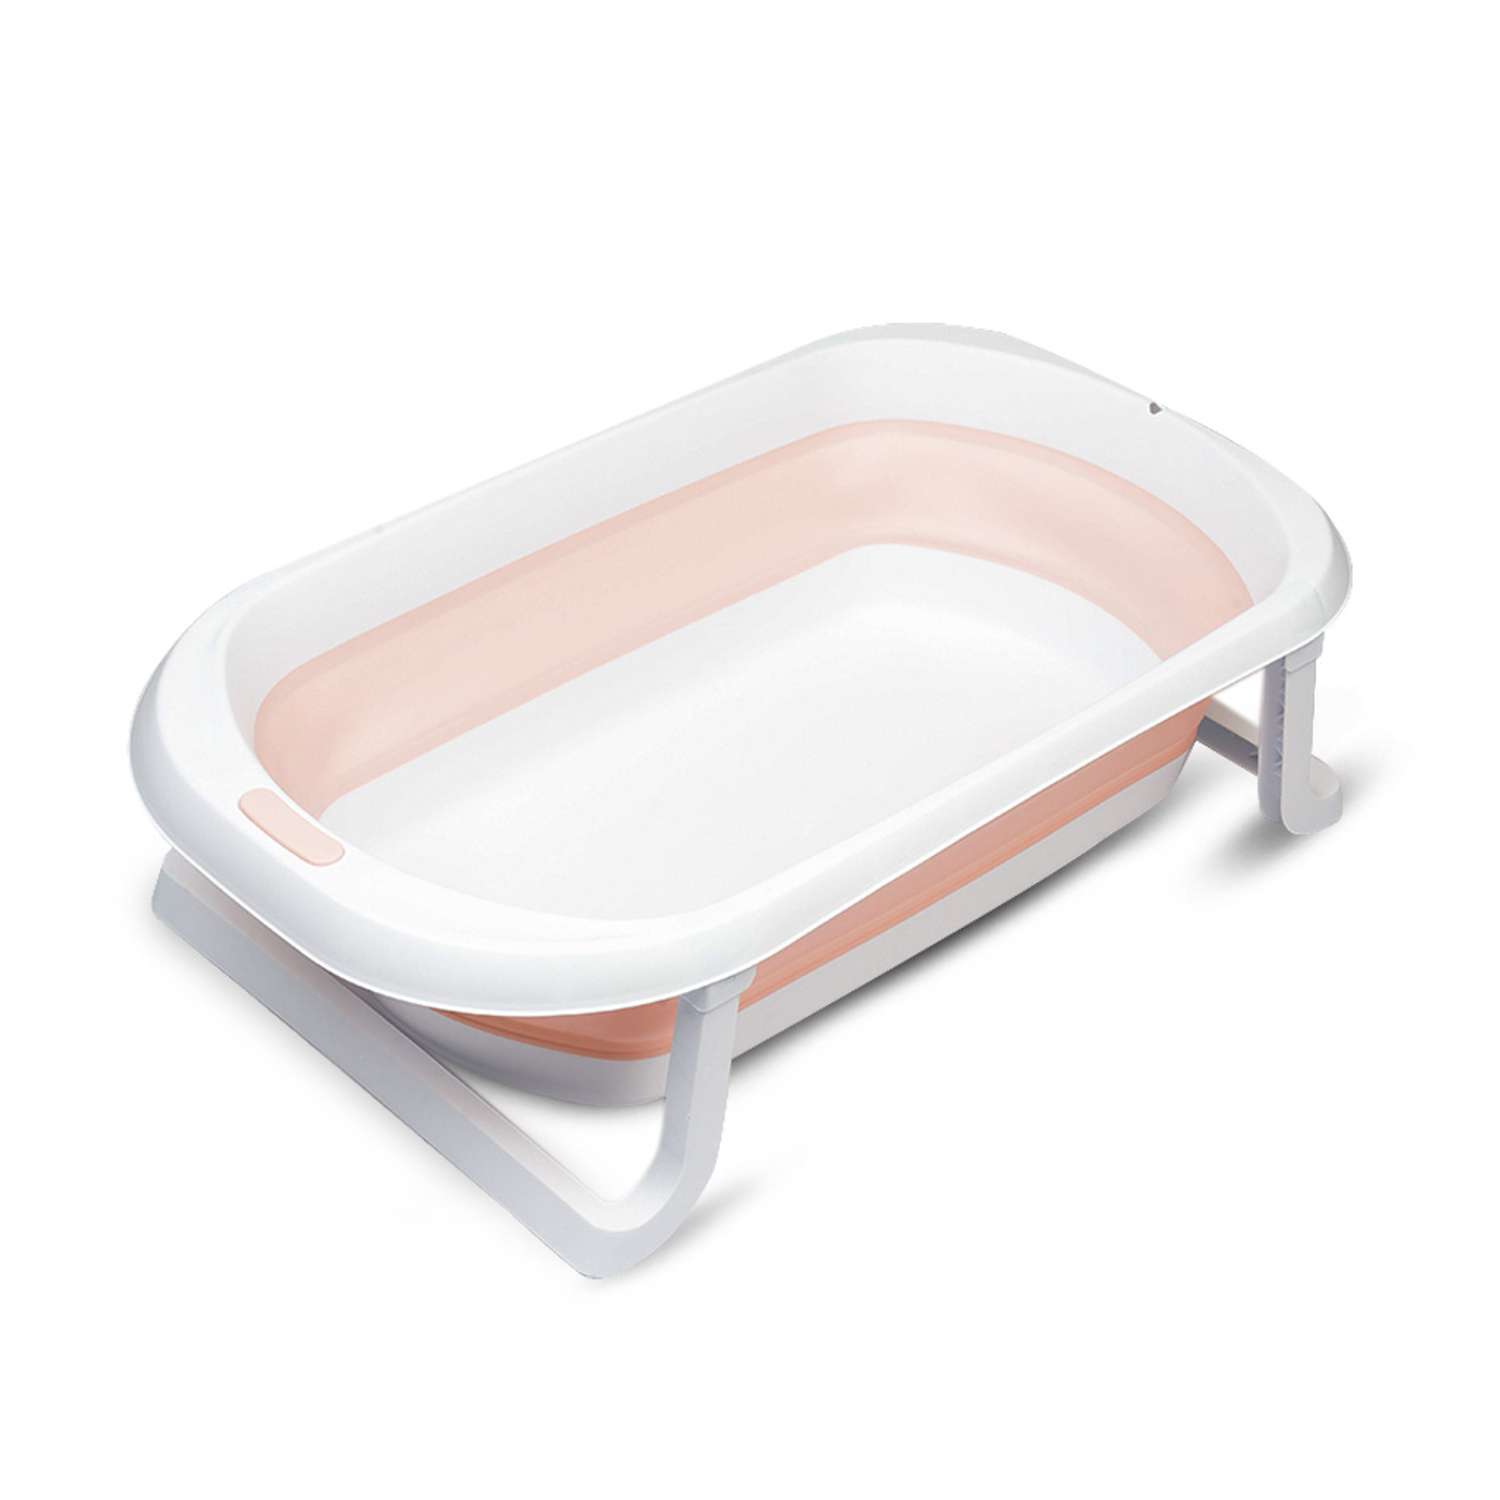 Детская складная ванночка Solmax для купания новорожденных розовая - фото 2